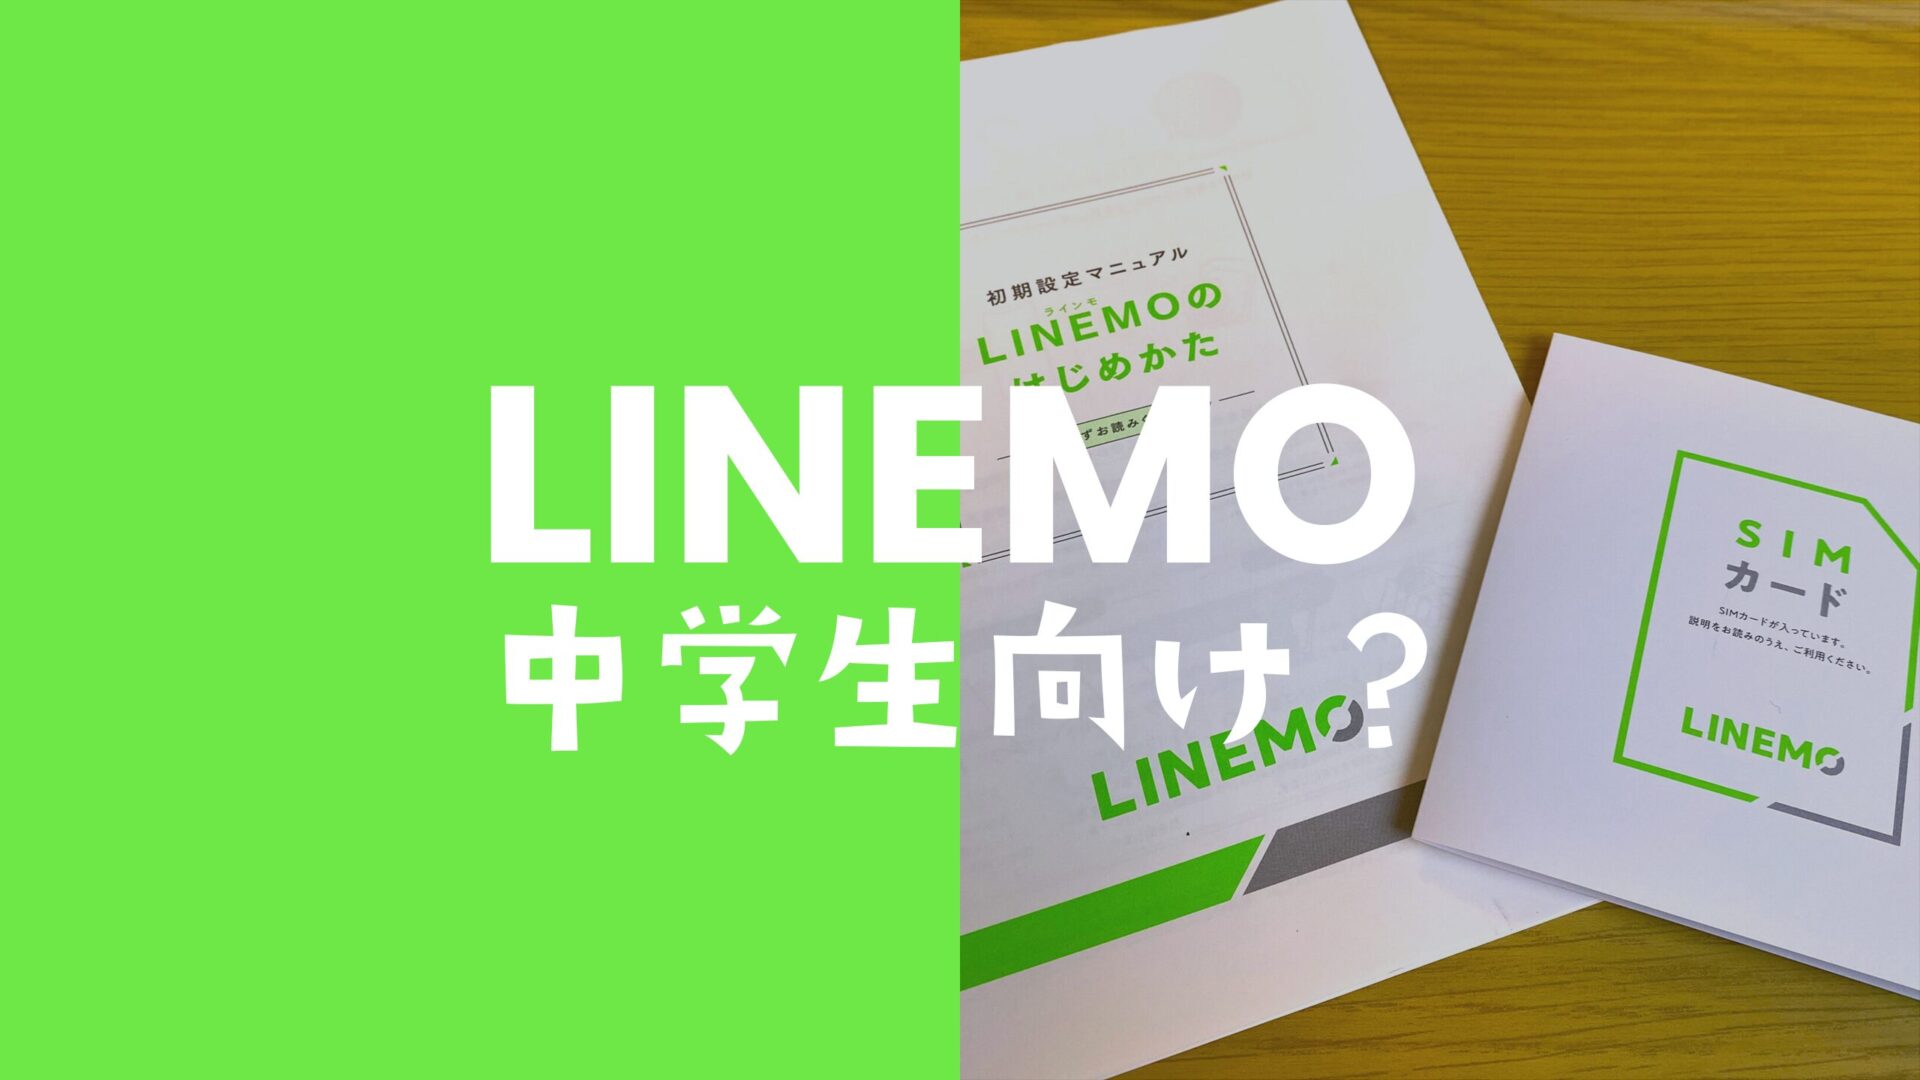 LINEMO(ラインモ)を中学生が利用可能。契約者にはなれない。のサムネイル画像